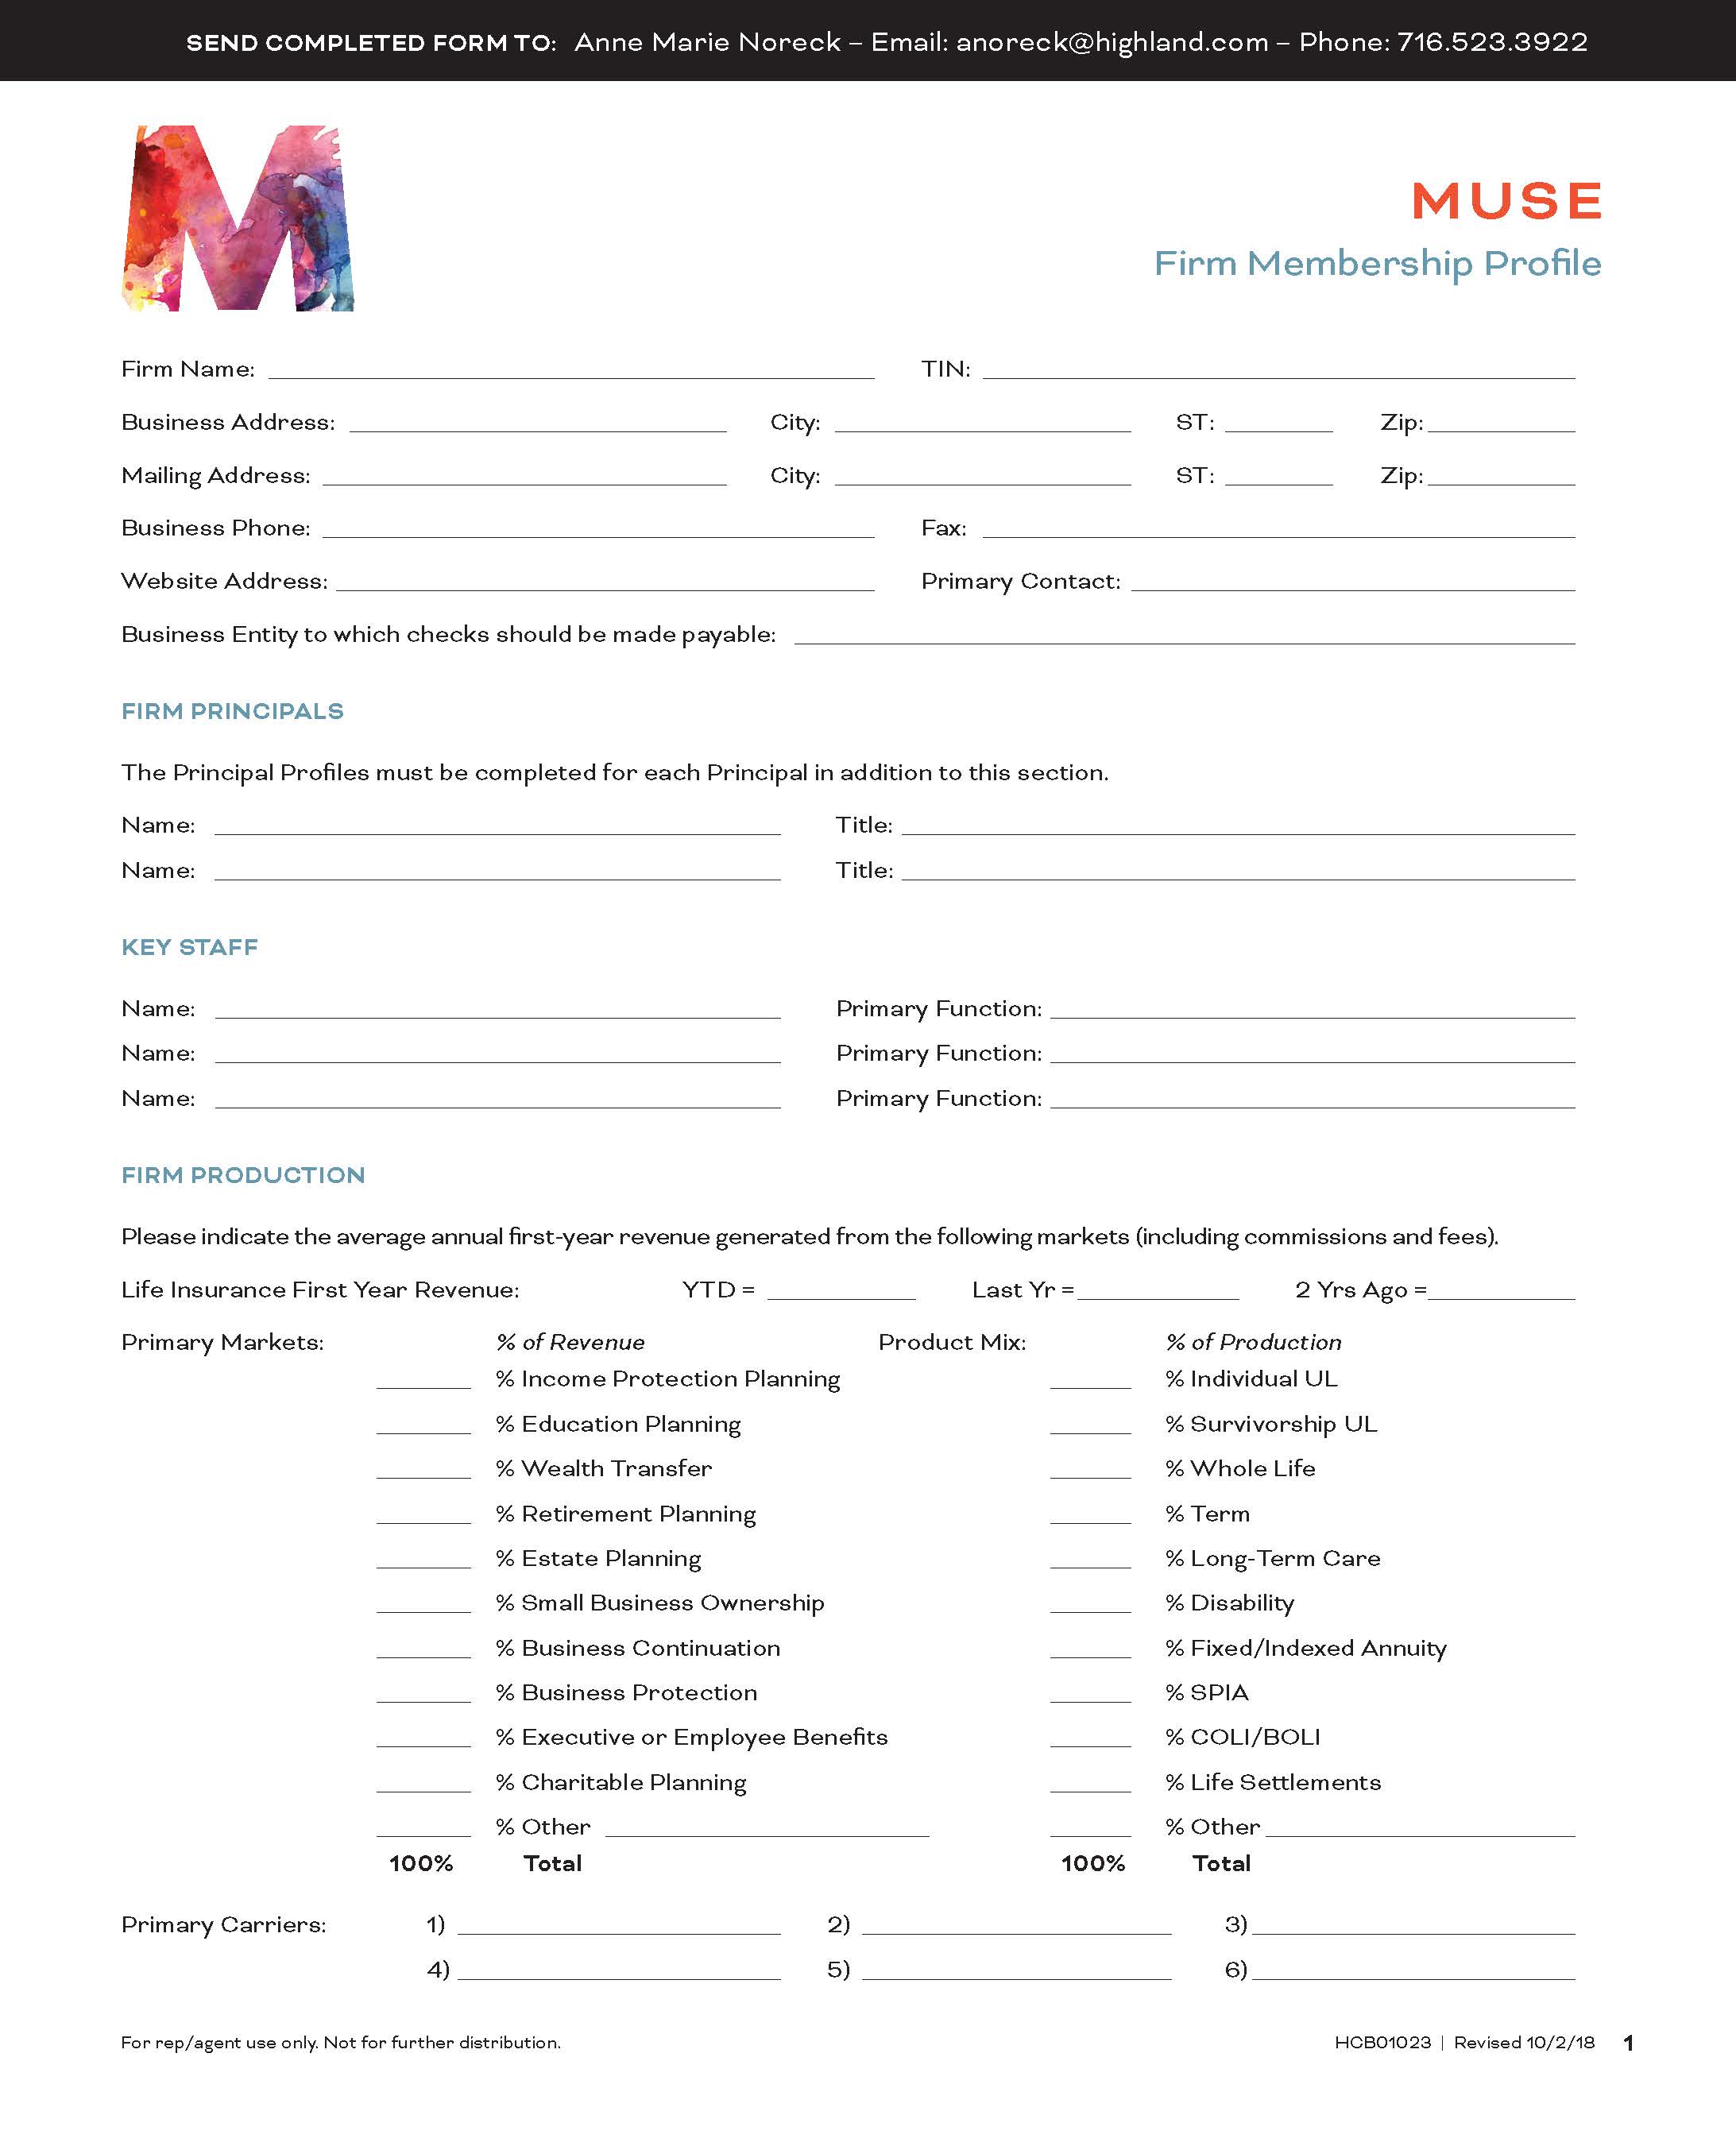 Firm Membership Profile